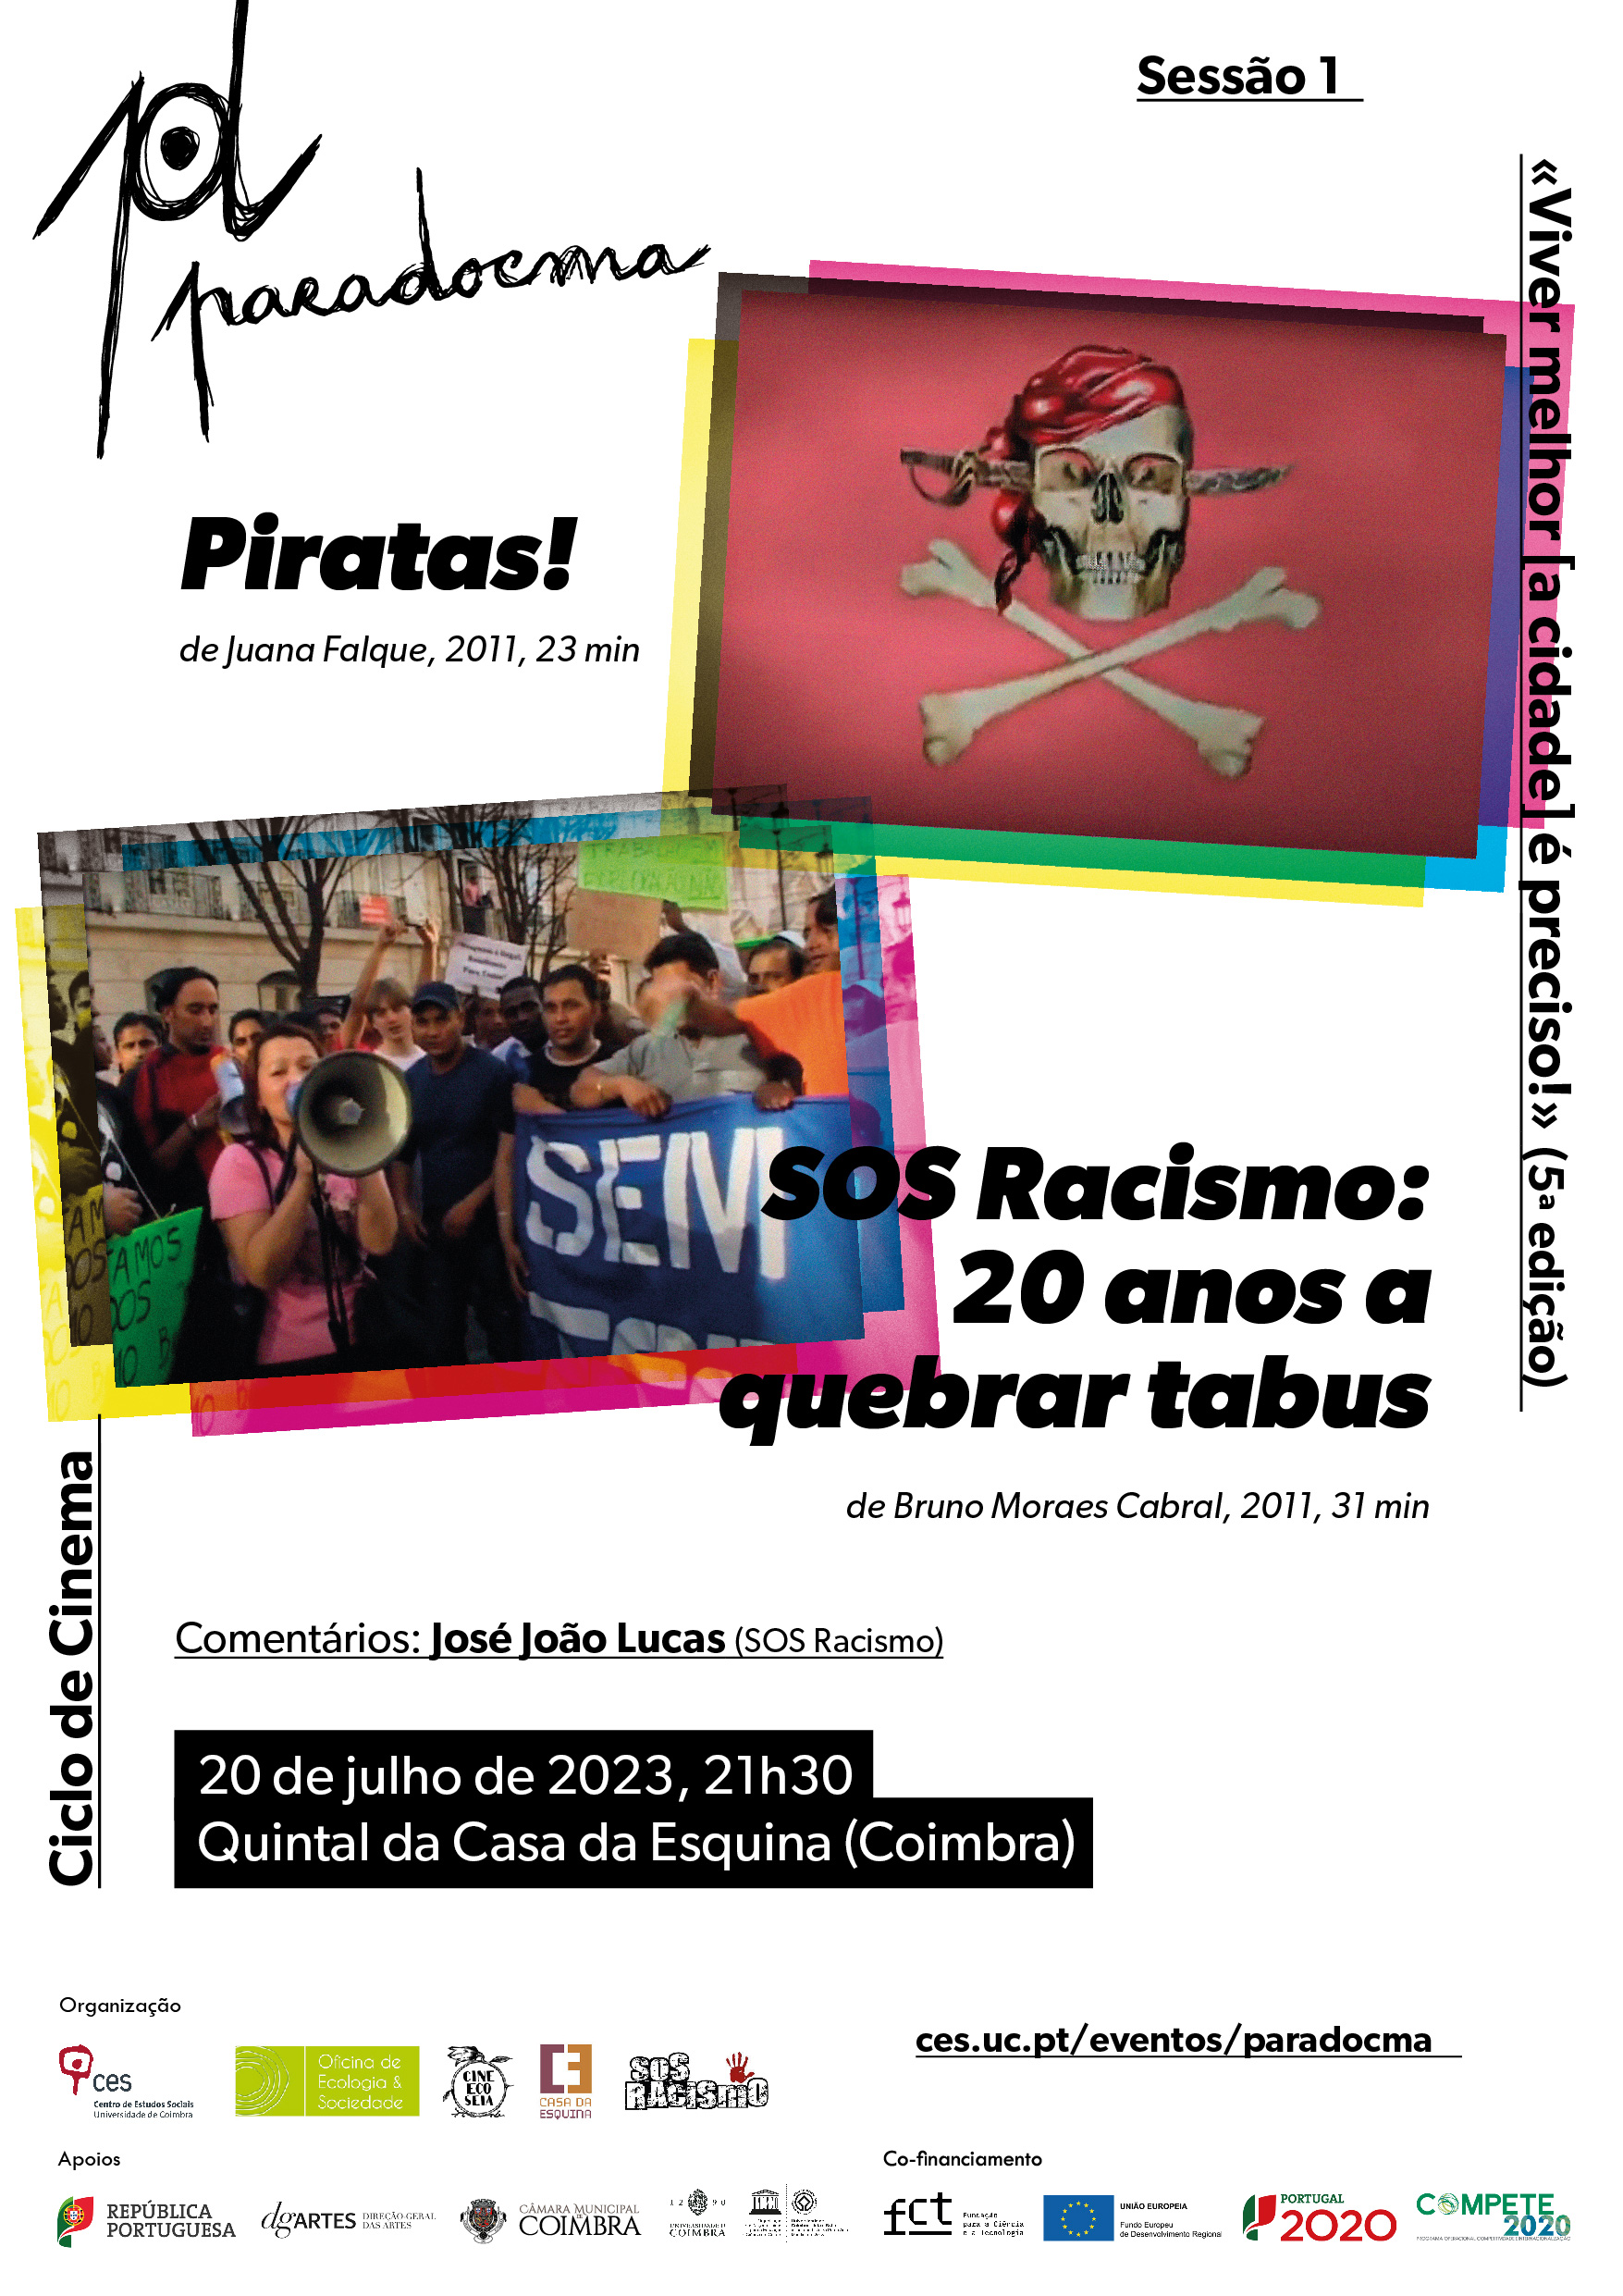 ParaDocma | Sessão 1: «Piratas!» de Juana Falque e «SOS Racismo: 20 anos a quebrar tabus» de Bruno Moraes Cabral<span id="edit_43488"><script>$(function() { $('#edit_43488').load( "/myces/user/editobj.php?tipo=evento&id=43488" ); });</script></span>